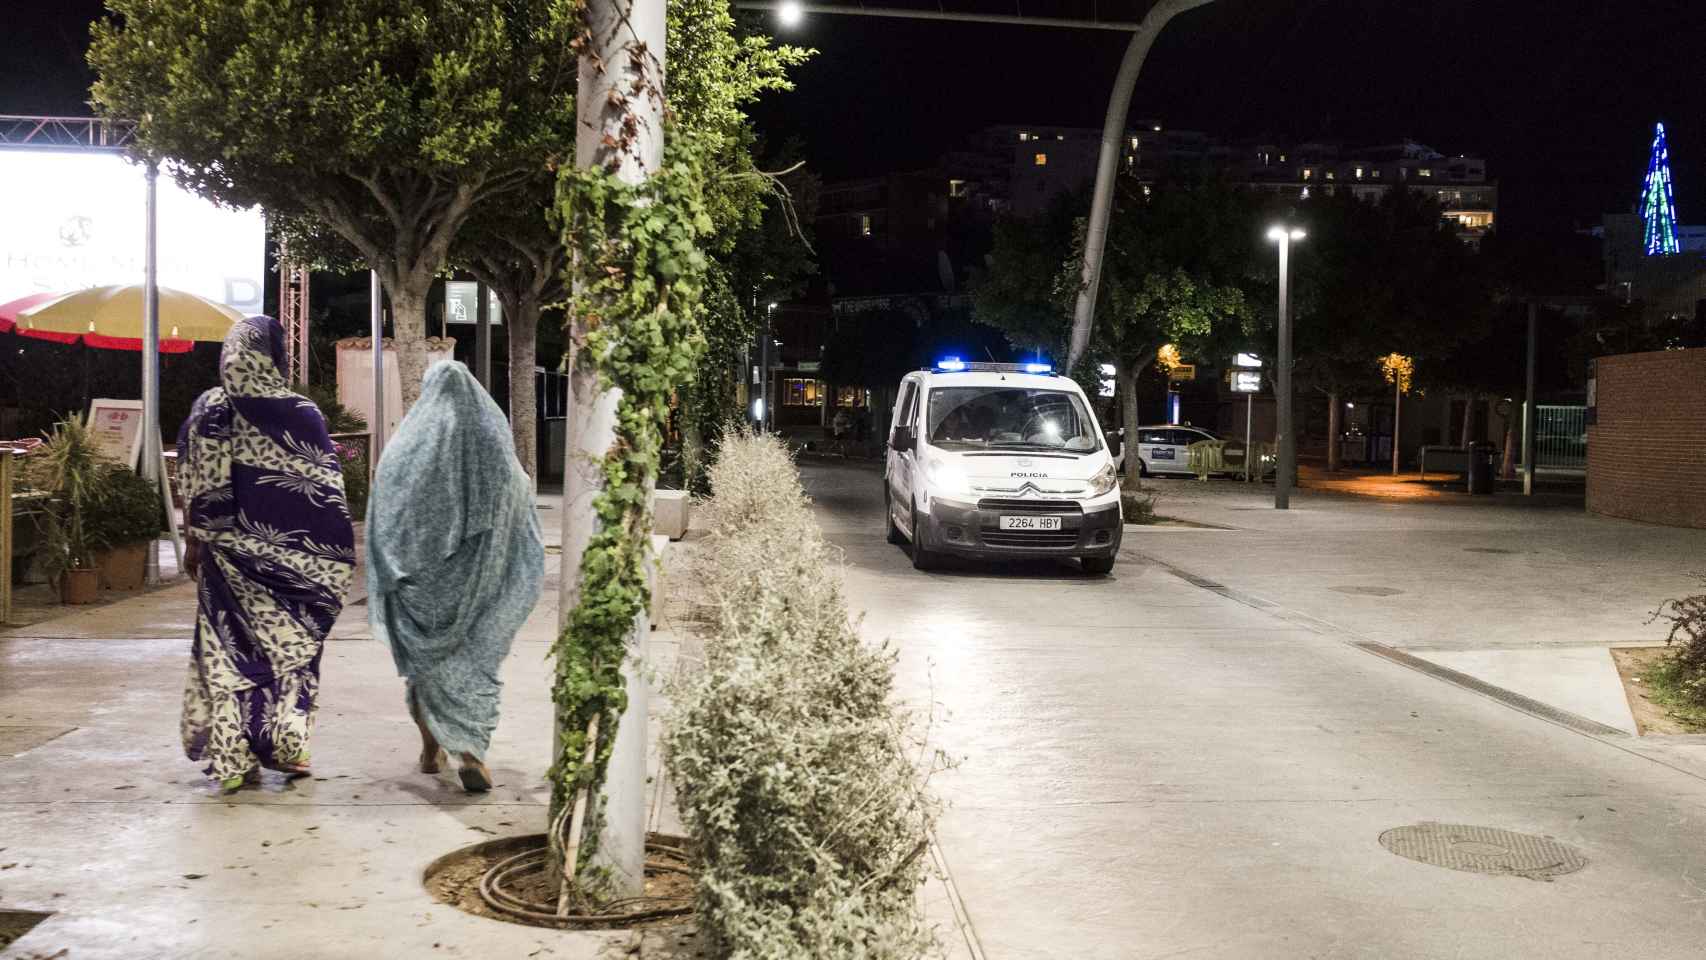 Dos mujeres totalmente tapadas en una calle en Magaluf representando el contraste con la lujuria que caracteriza a la localidad mallorquina